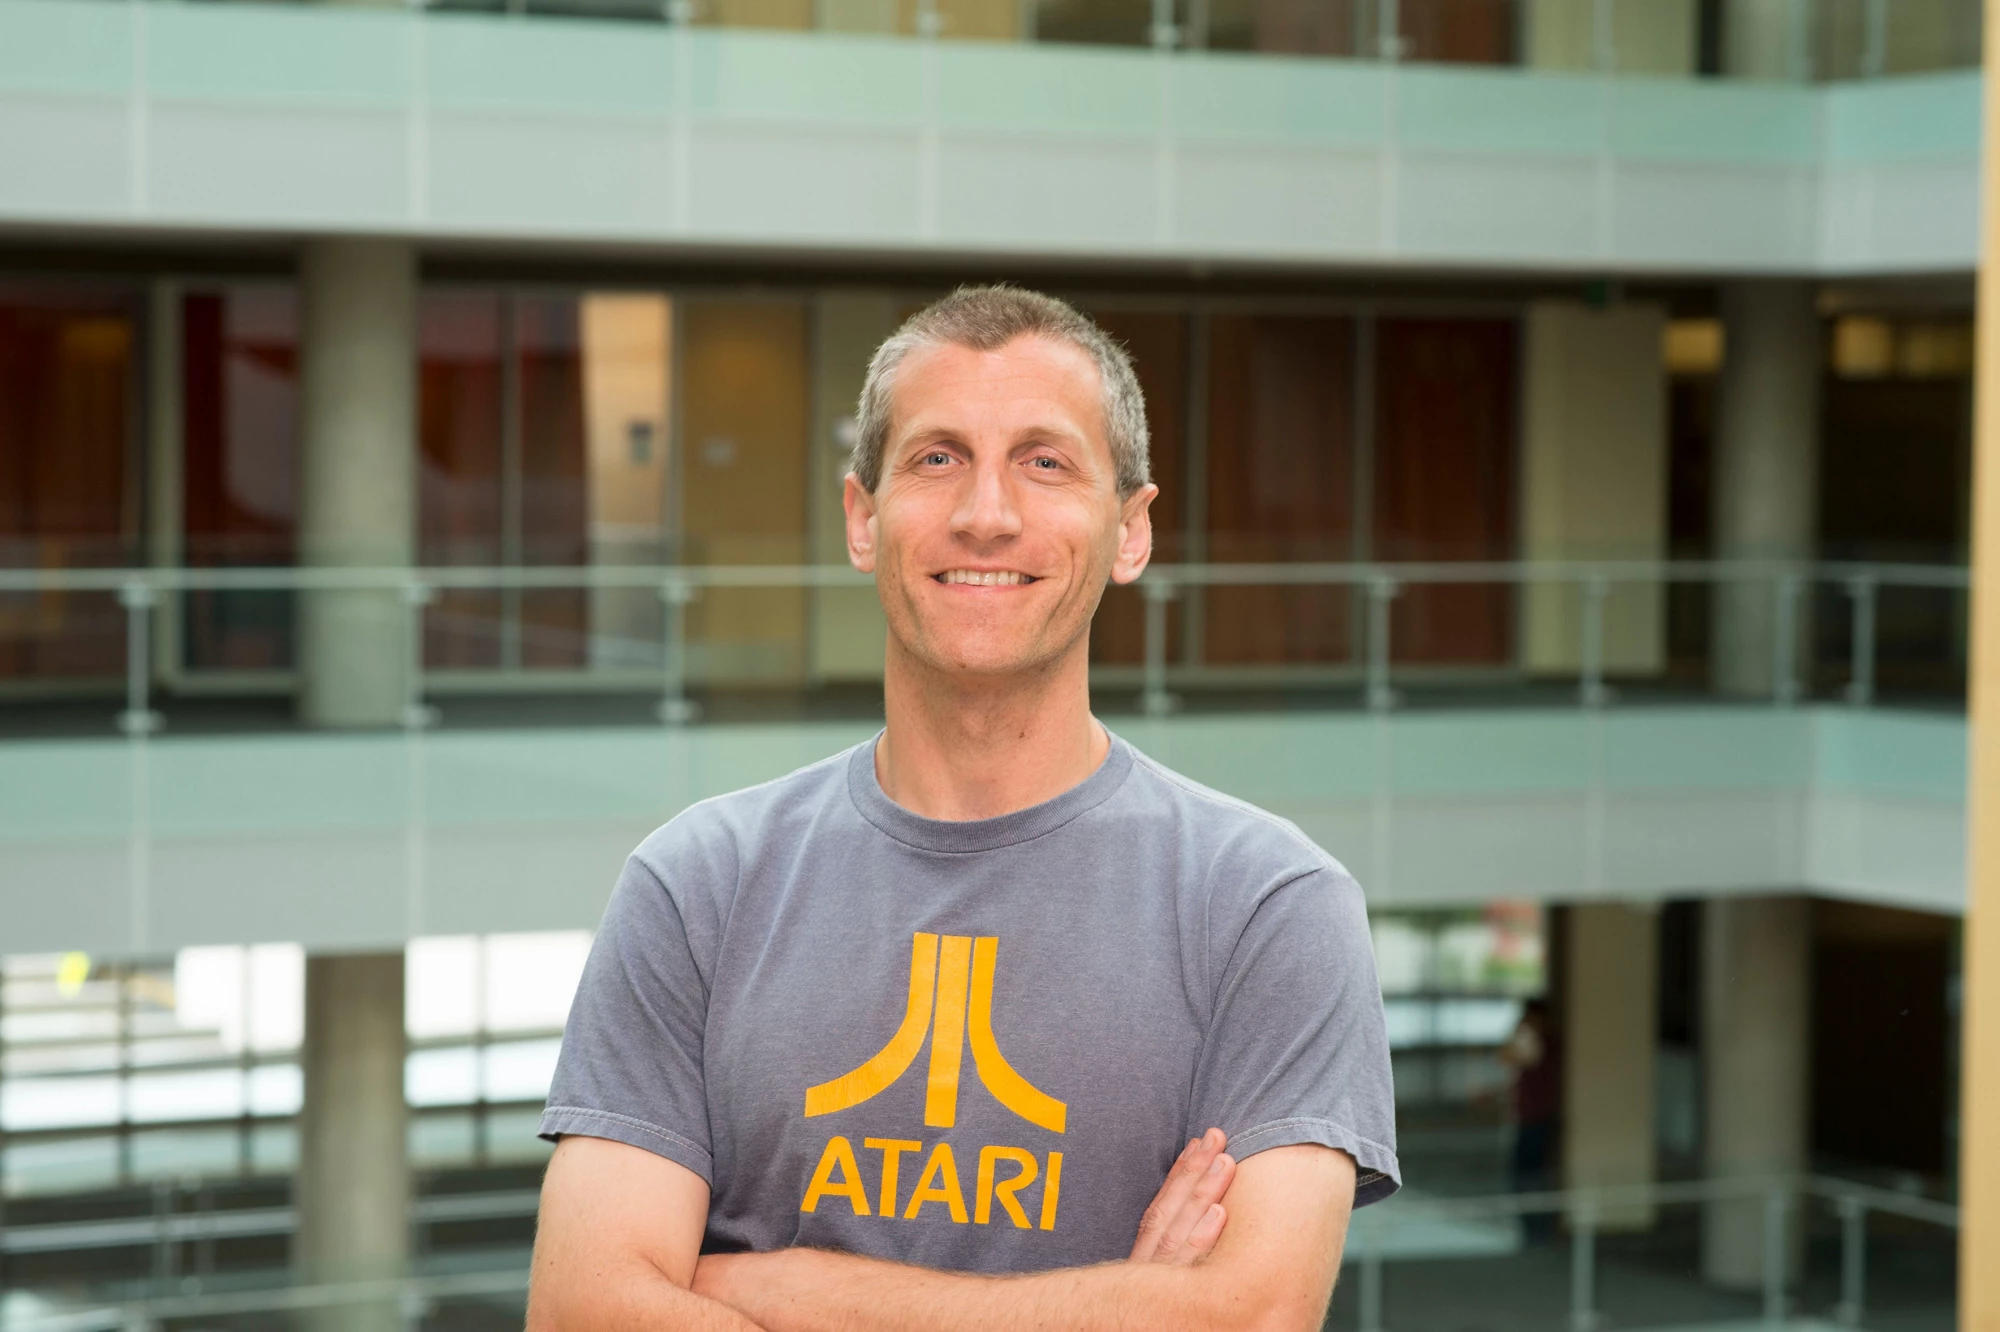 Dan Morris, Principal Scientist at Microsoft